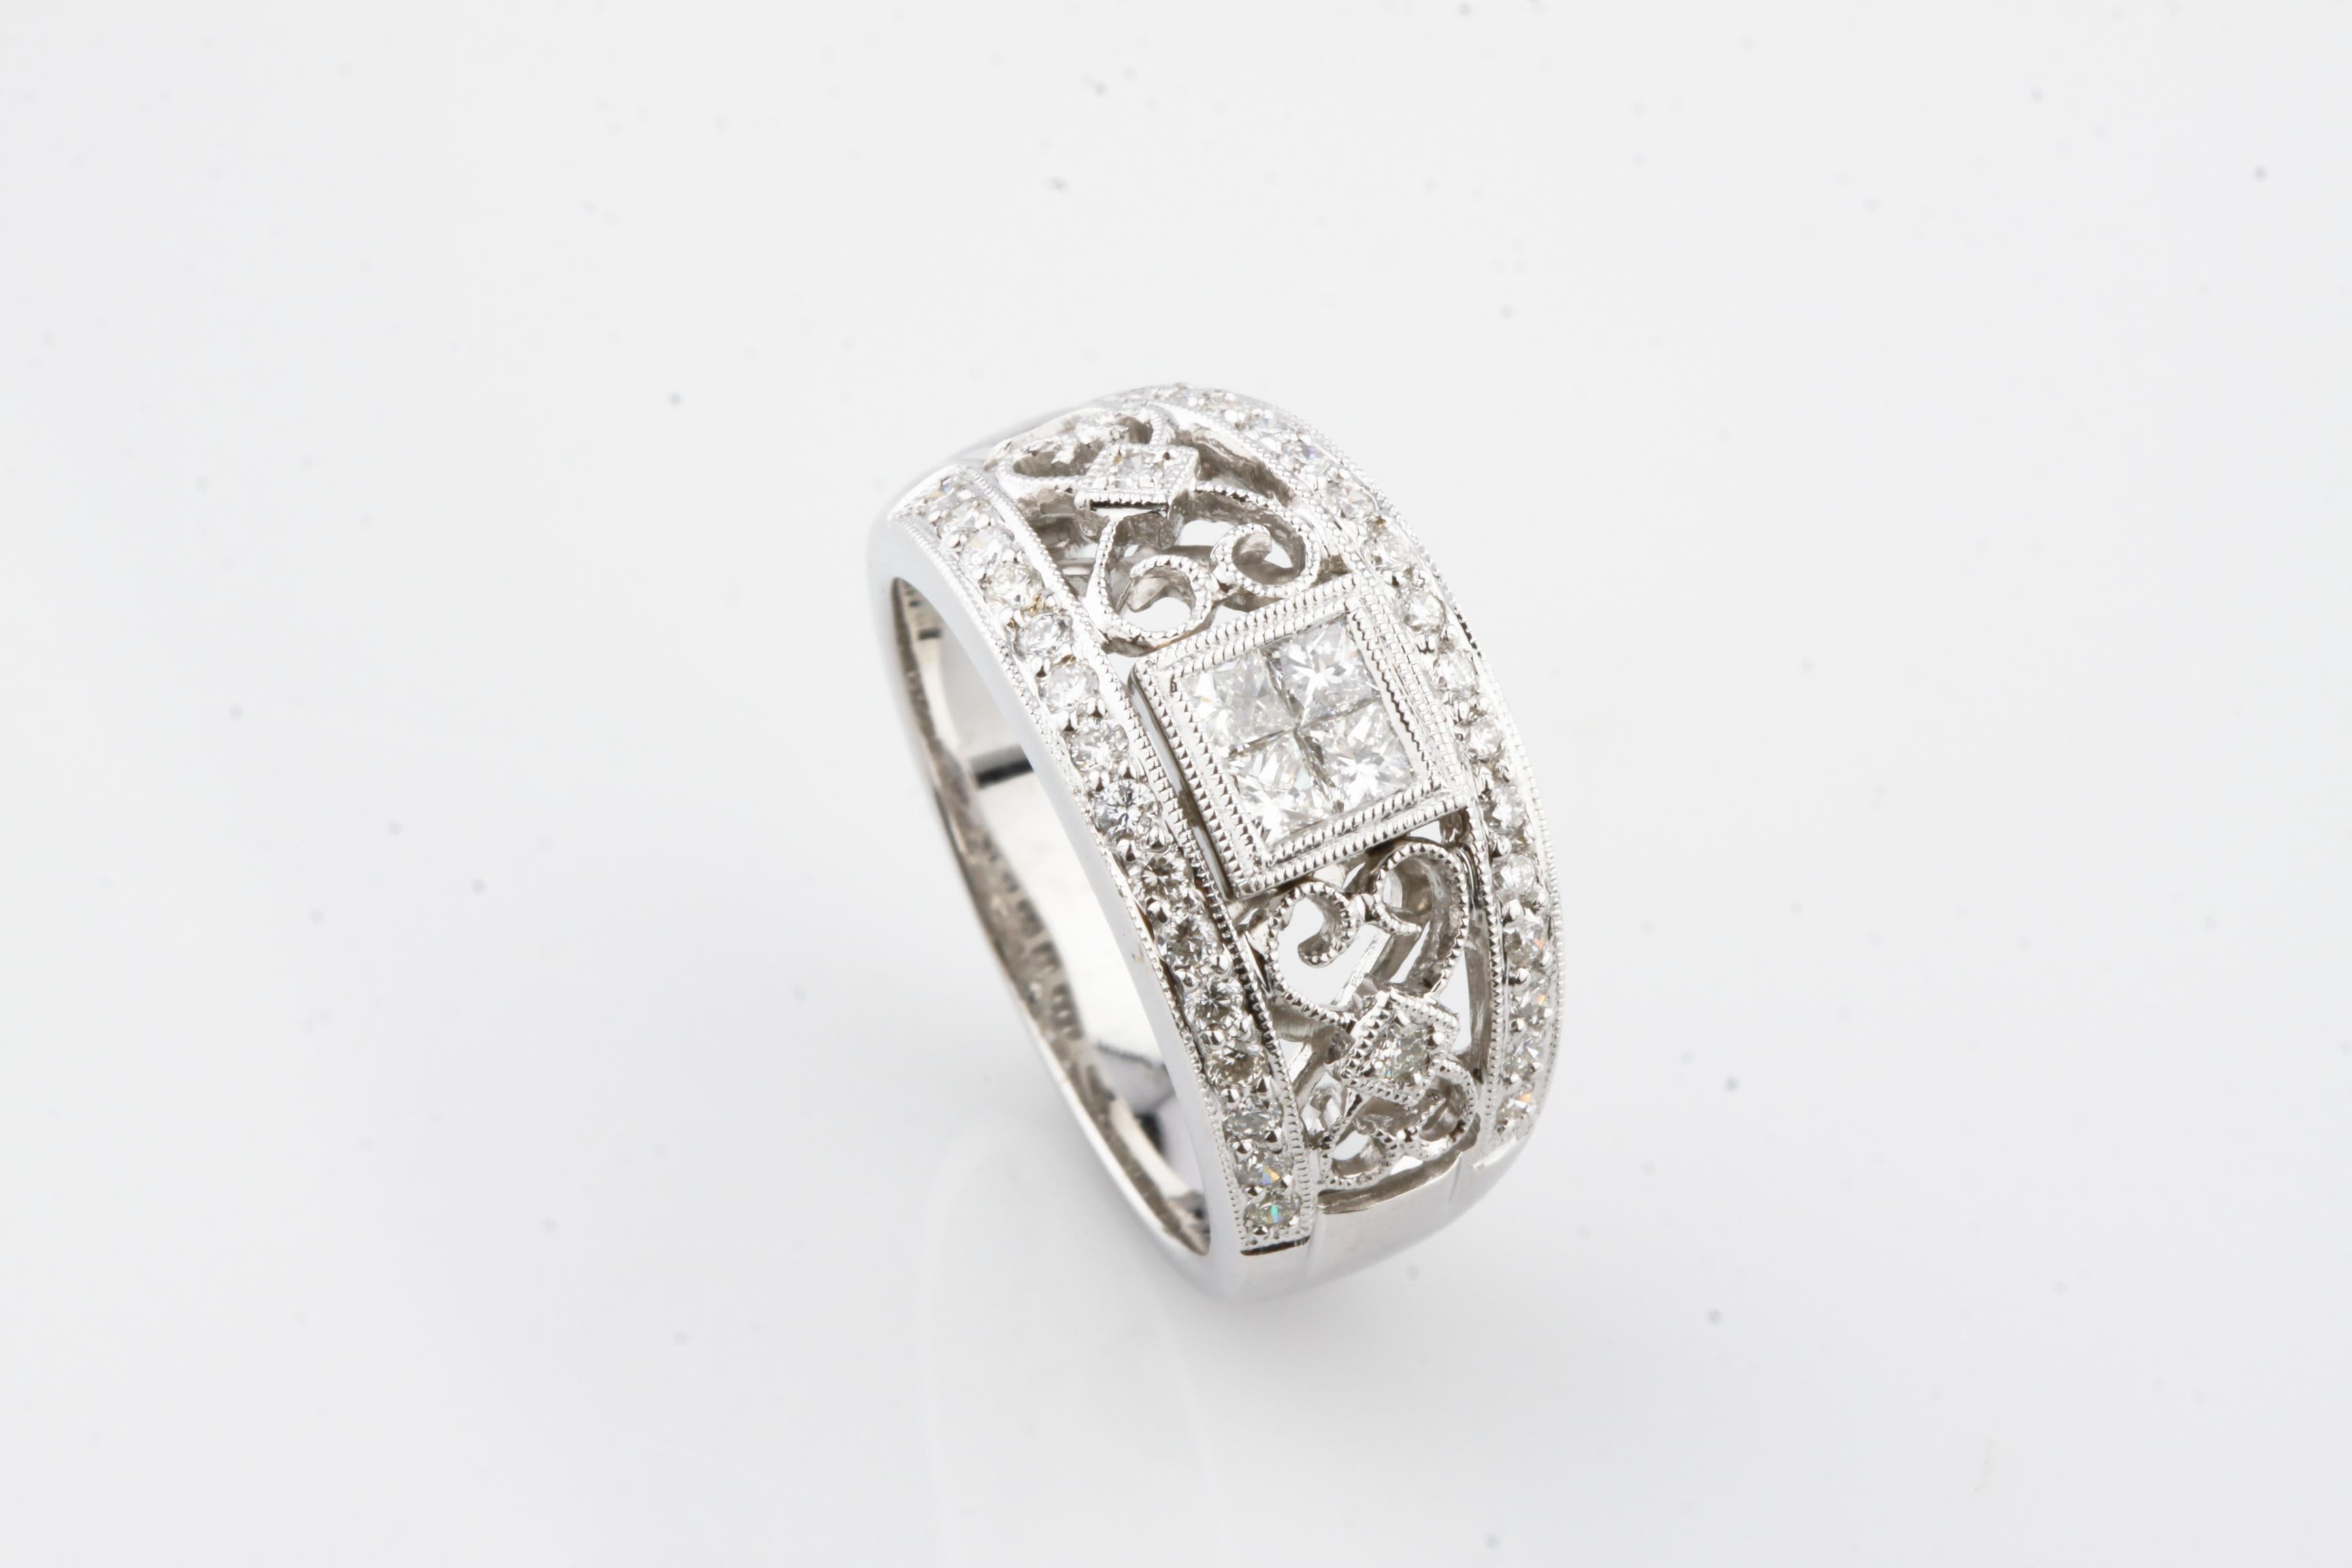 Wunderschöner, einzigartiger 18k Gold Diamond Band Ring
Mit unsichtbar gefasstem Princess-Diamant-Mittelstück und runden Diamant-Akzenten
Aufwändige Filigran-/Milchkornverzierungen
Gesamtgewicht der Diamanten = 1,25 ct
Breite der vorderen